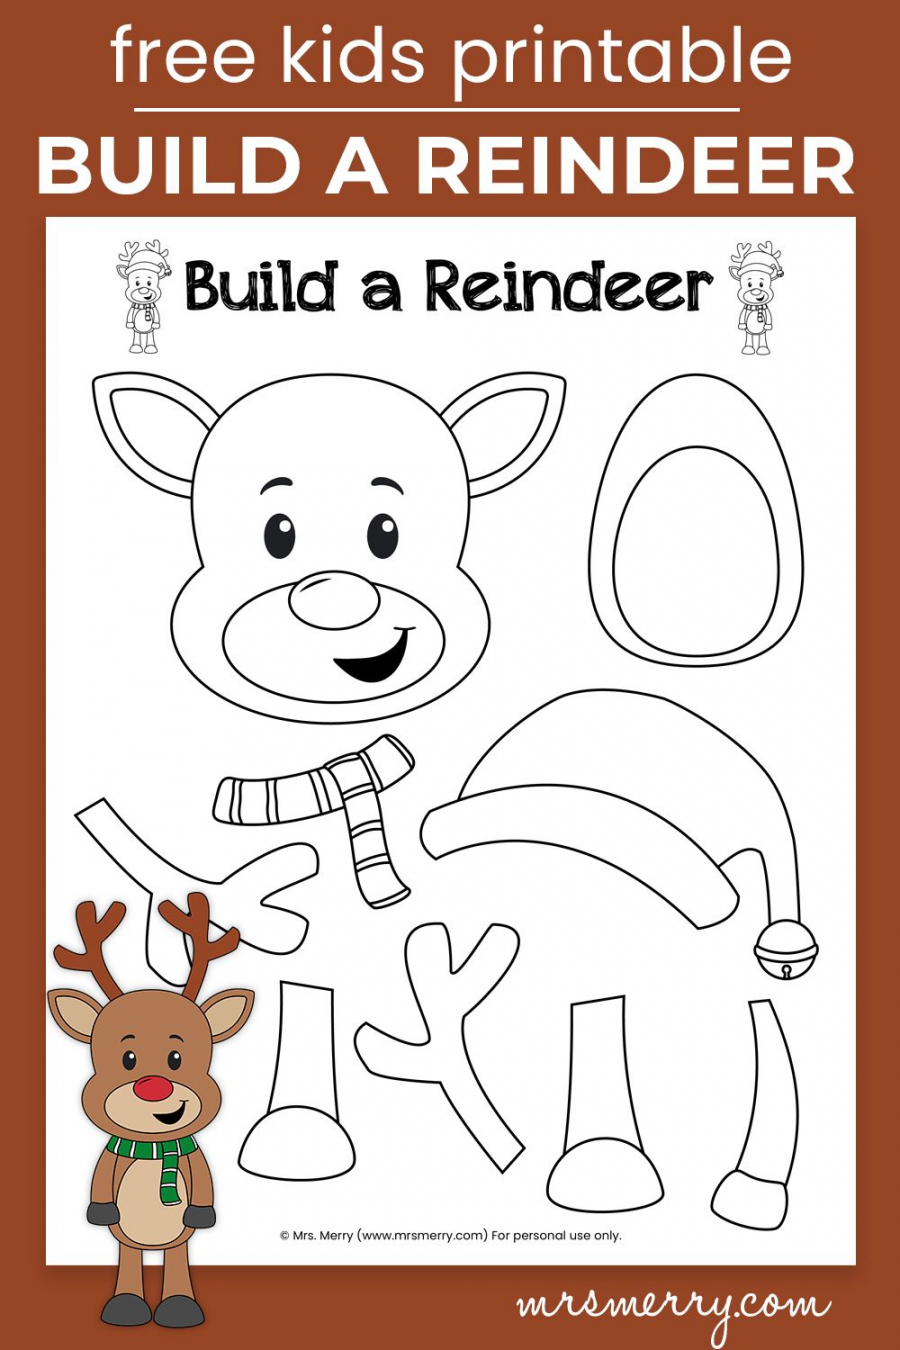 Pinterest - FREE Printables - Build A Reindeer Printable